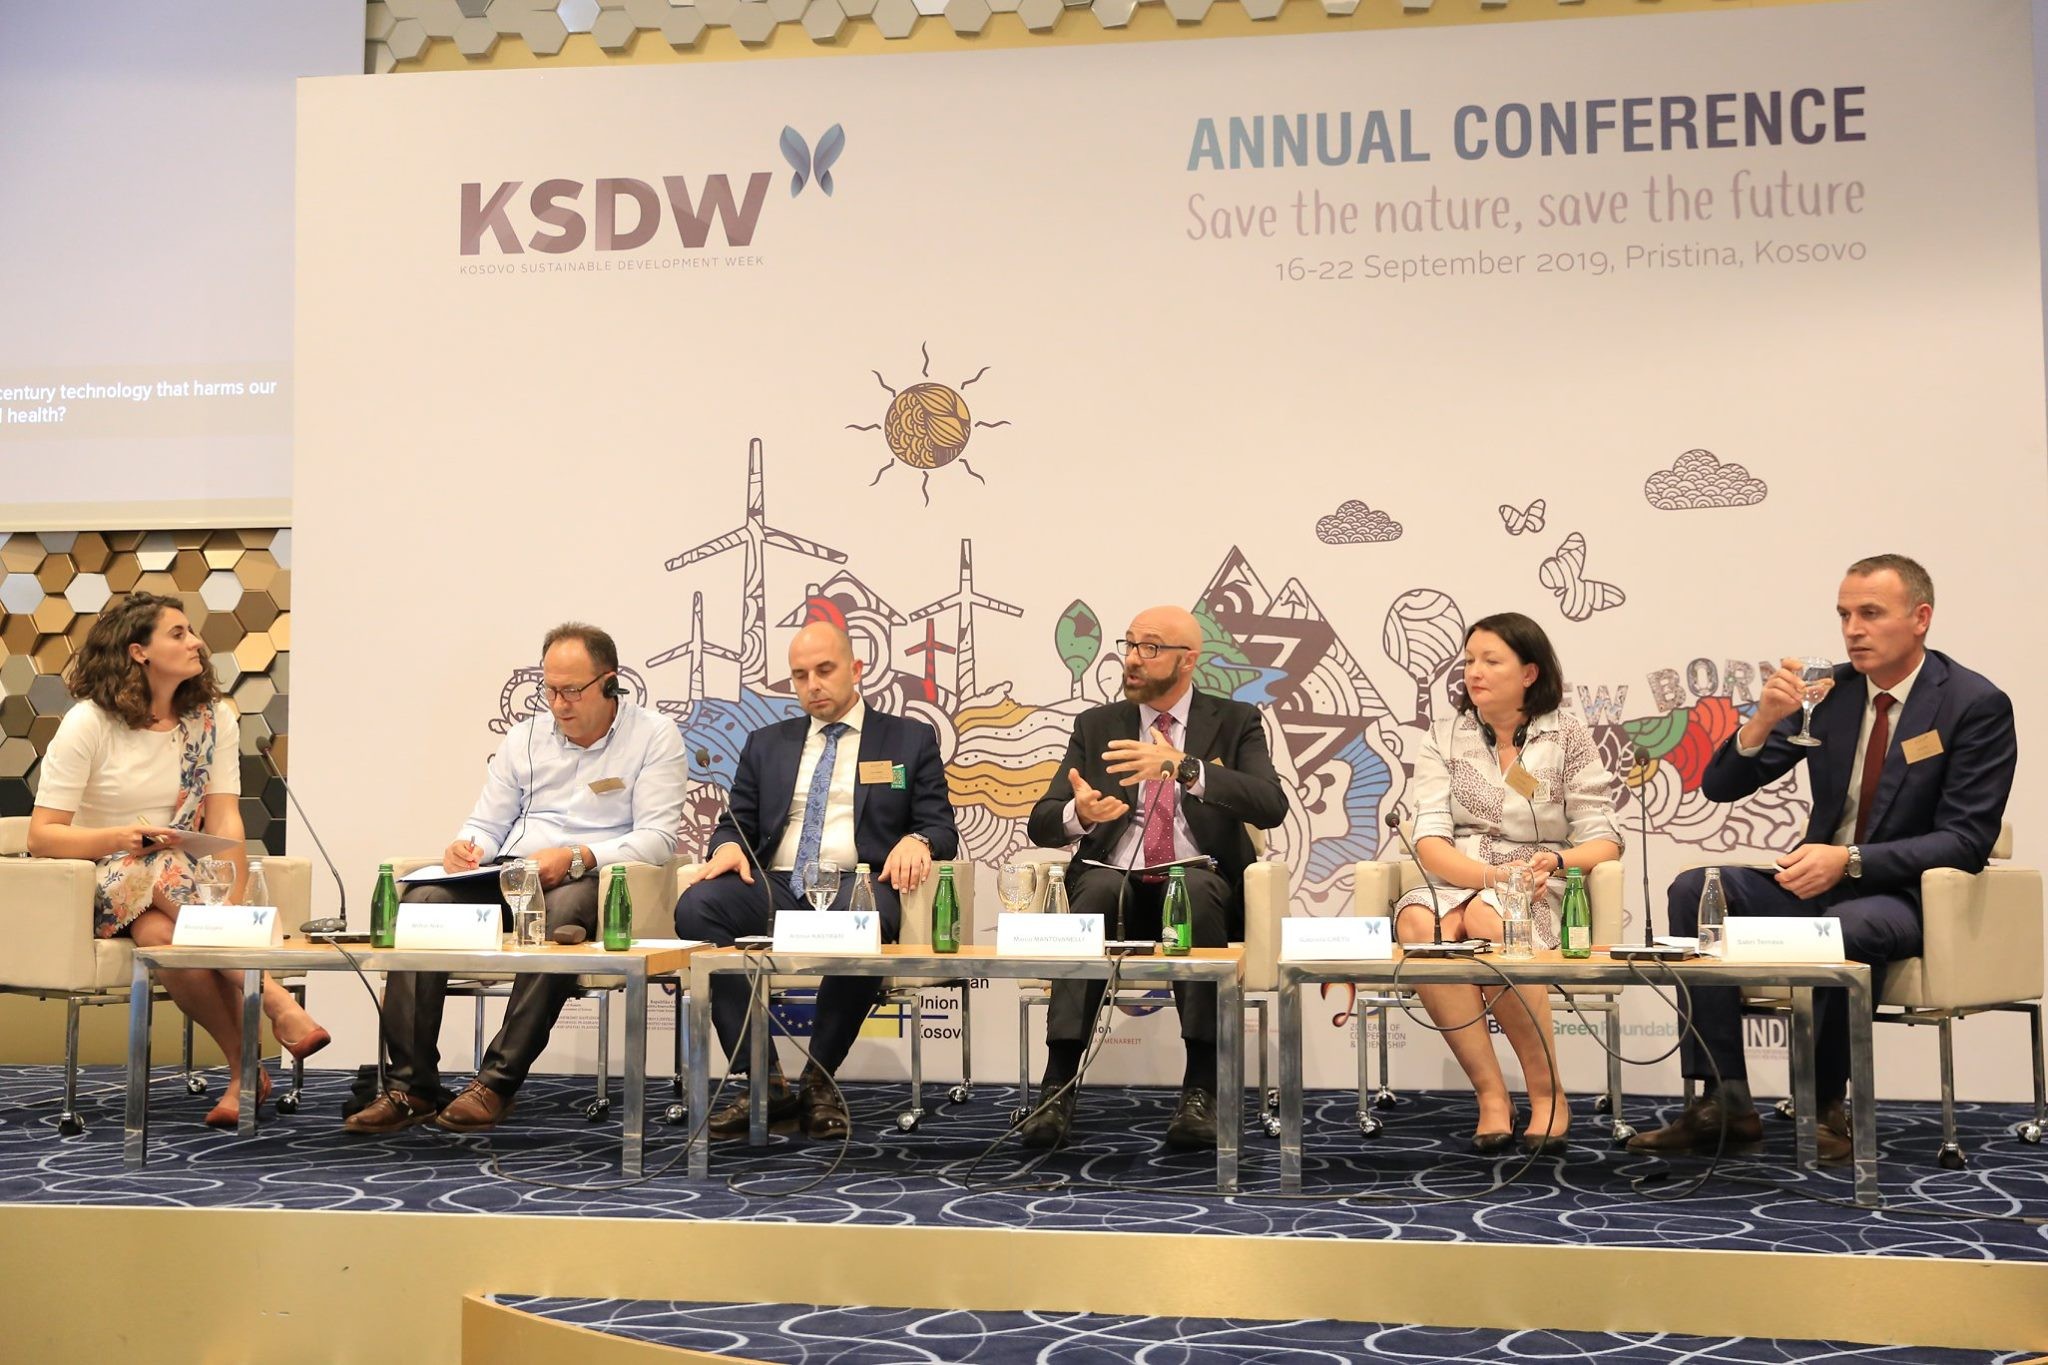 Deri më 2030 Kosova duhet të ketë së paku 32% të energjisë së ripërtëritshme